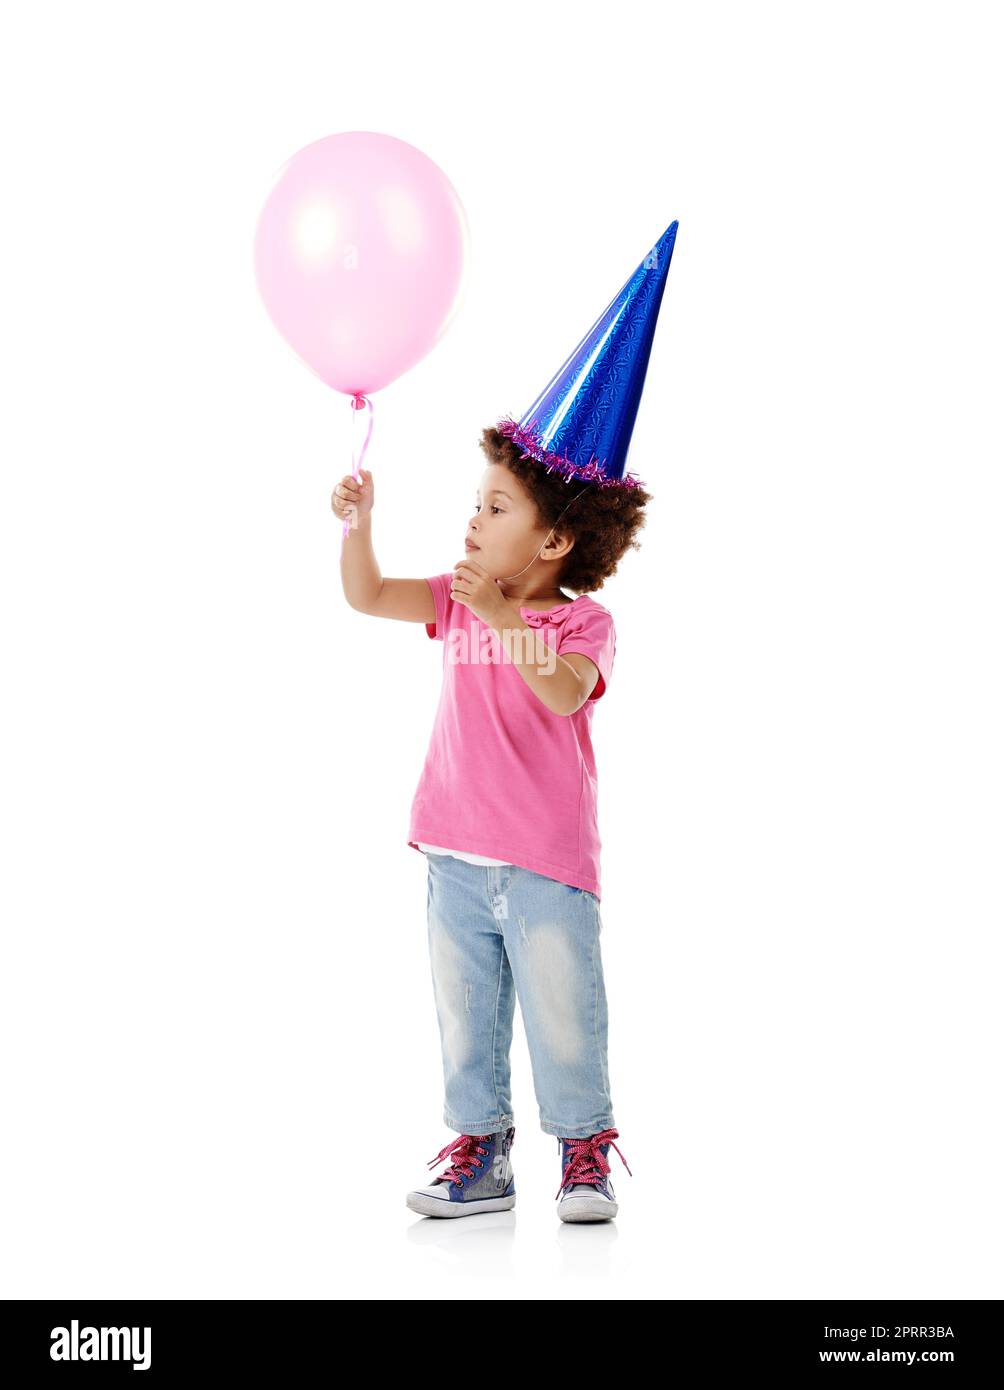 Je me demande si je pouvais flotter loin sur cette chose... Studio photo d'une petite fille mignonne portant un chapeau de fête et tenant un ballon sur un fond blanc. Banque D'Images